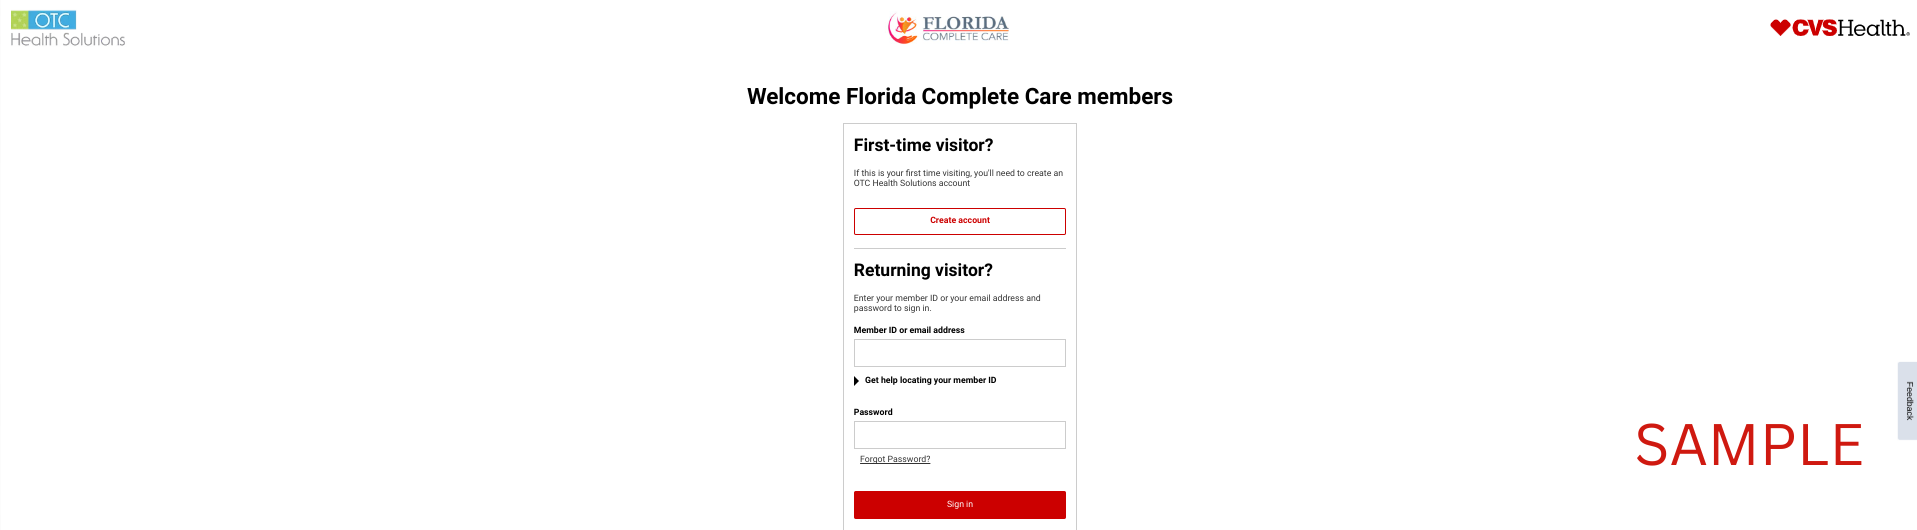 Florida Complete Care 2023 | CVS | OTCHS | Member Benefits | www.cvs.com/otchs/flcompletecare